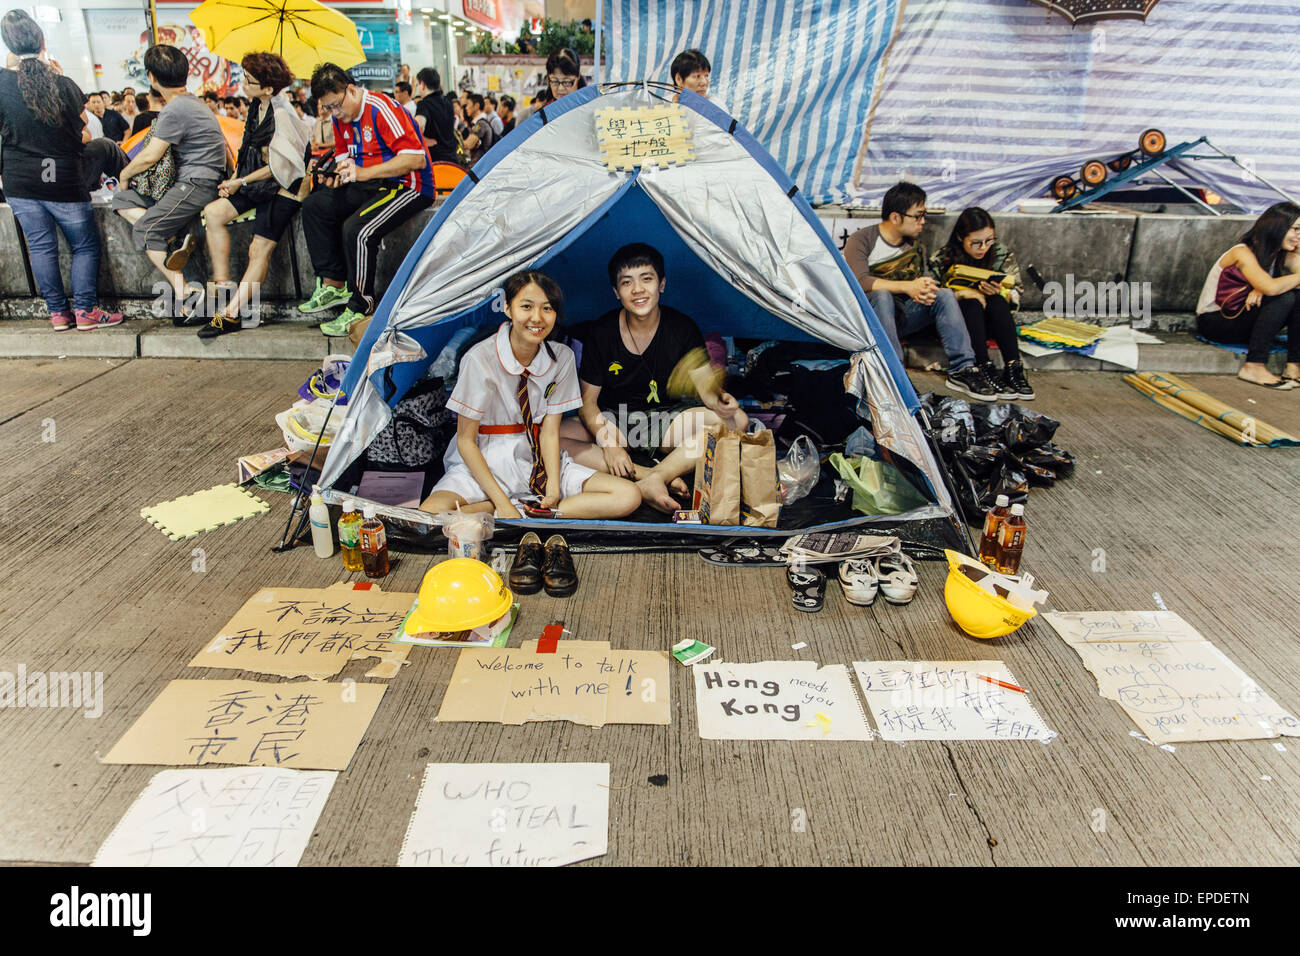 HONG KONG, Ott 23: ombrellone rivoluzione in Mongkok il 23 ottobre 2014. Foto Stock